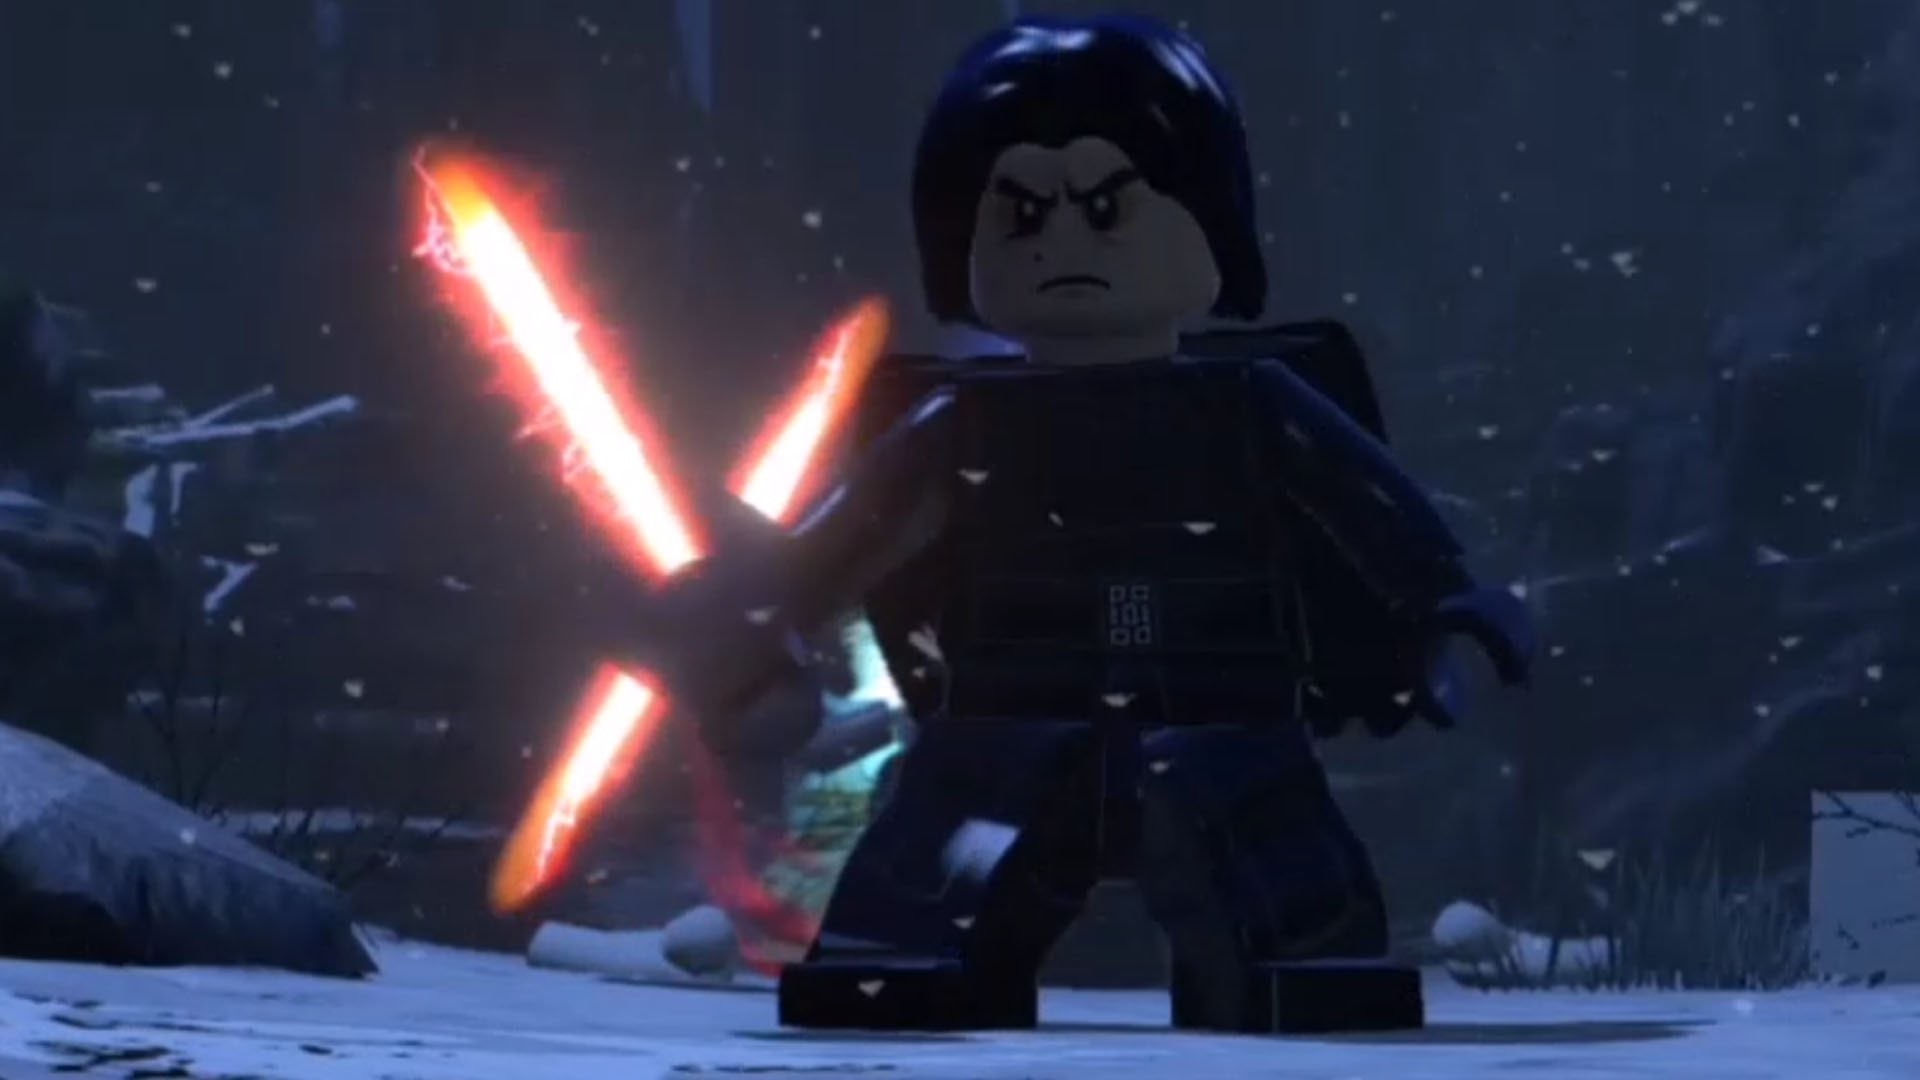 LEGO Star Wars The Force Awakens – Kylo Ren Final Boss Fight HD – YouTube